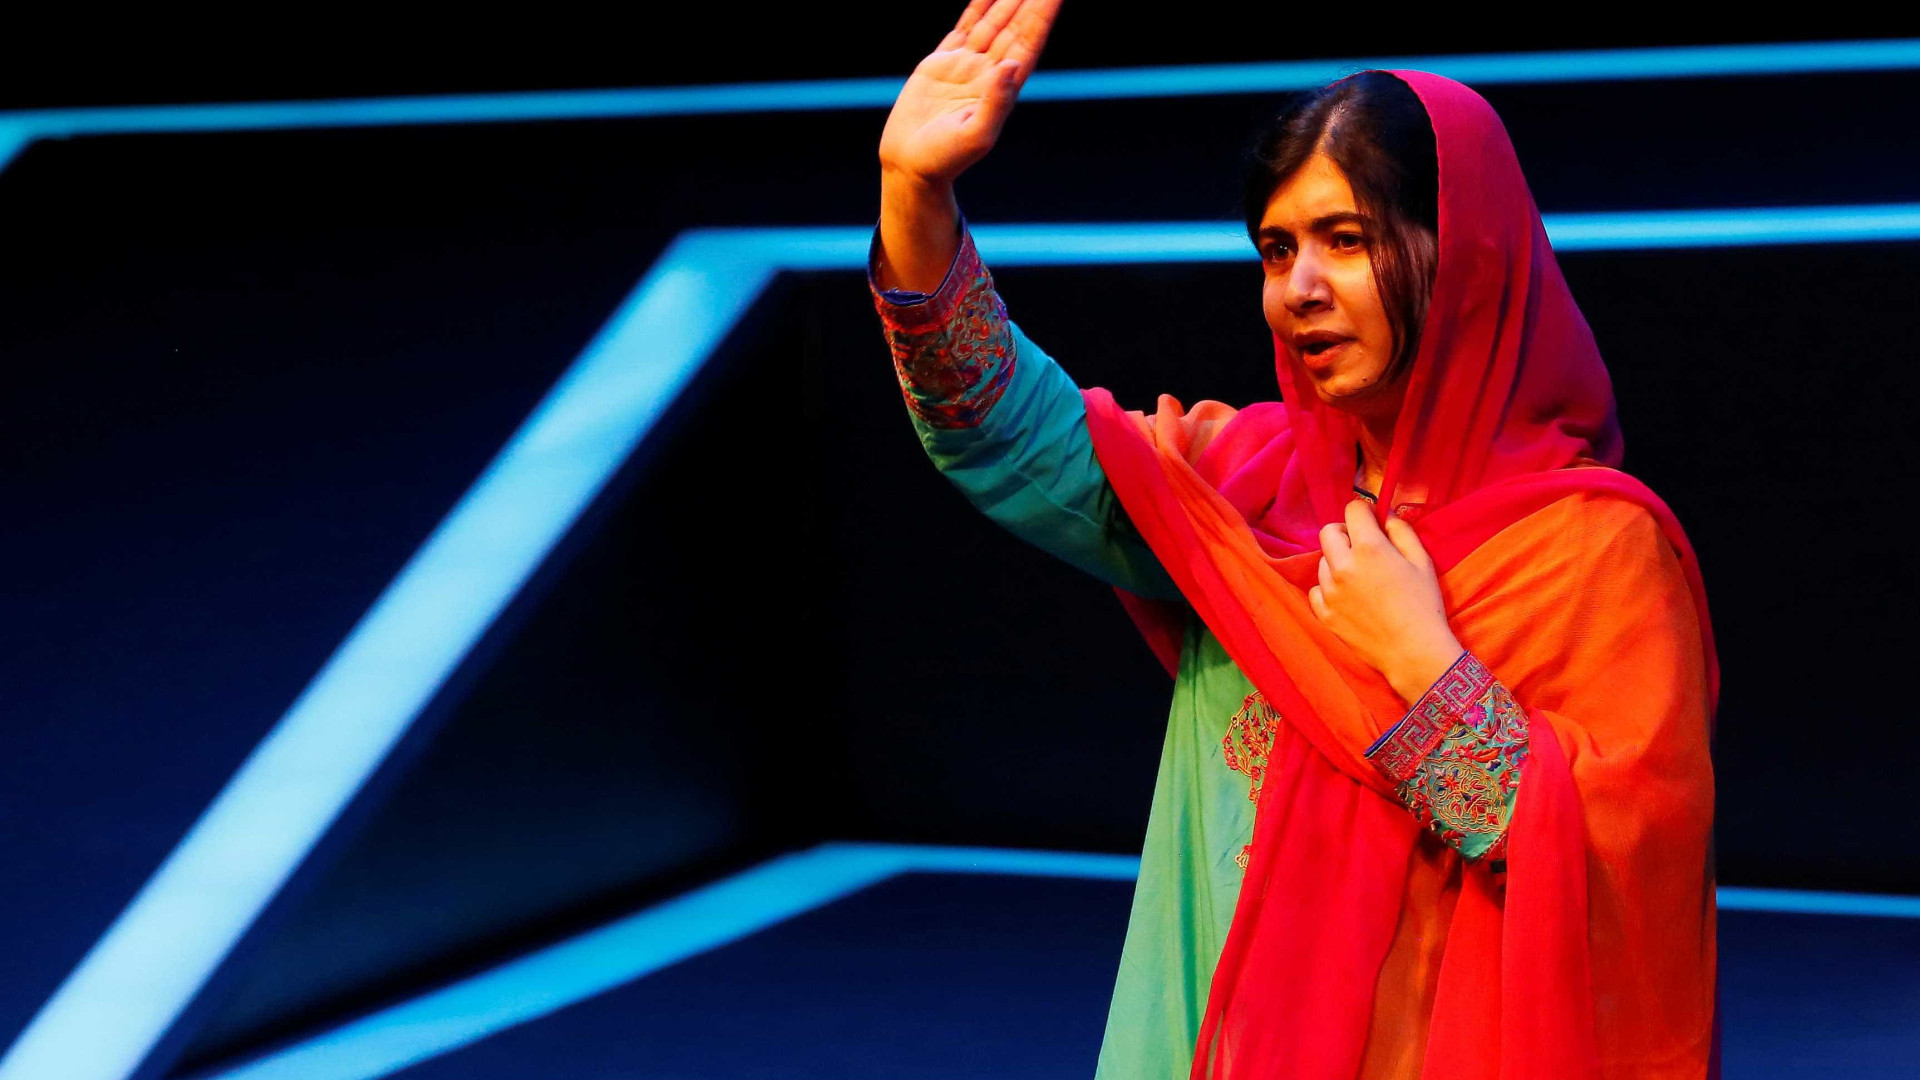 Seis anos após atentado, Malala volta ao Paquistão